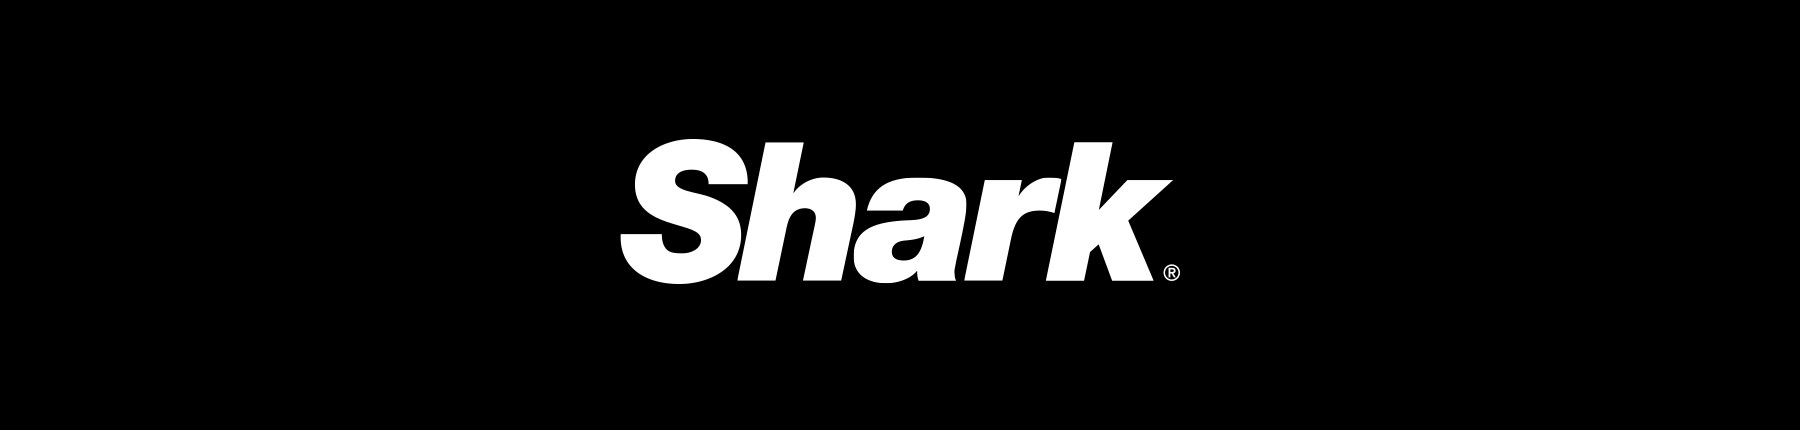 Shark Newsletter